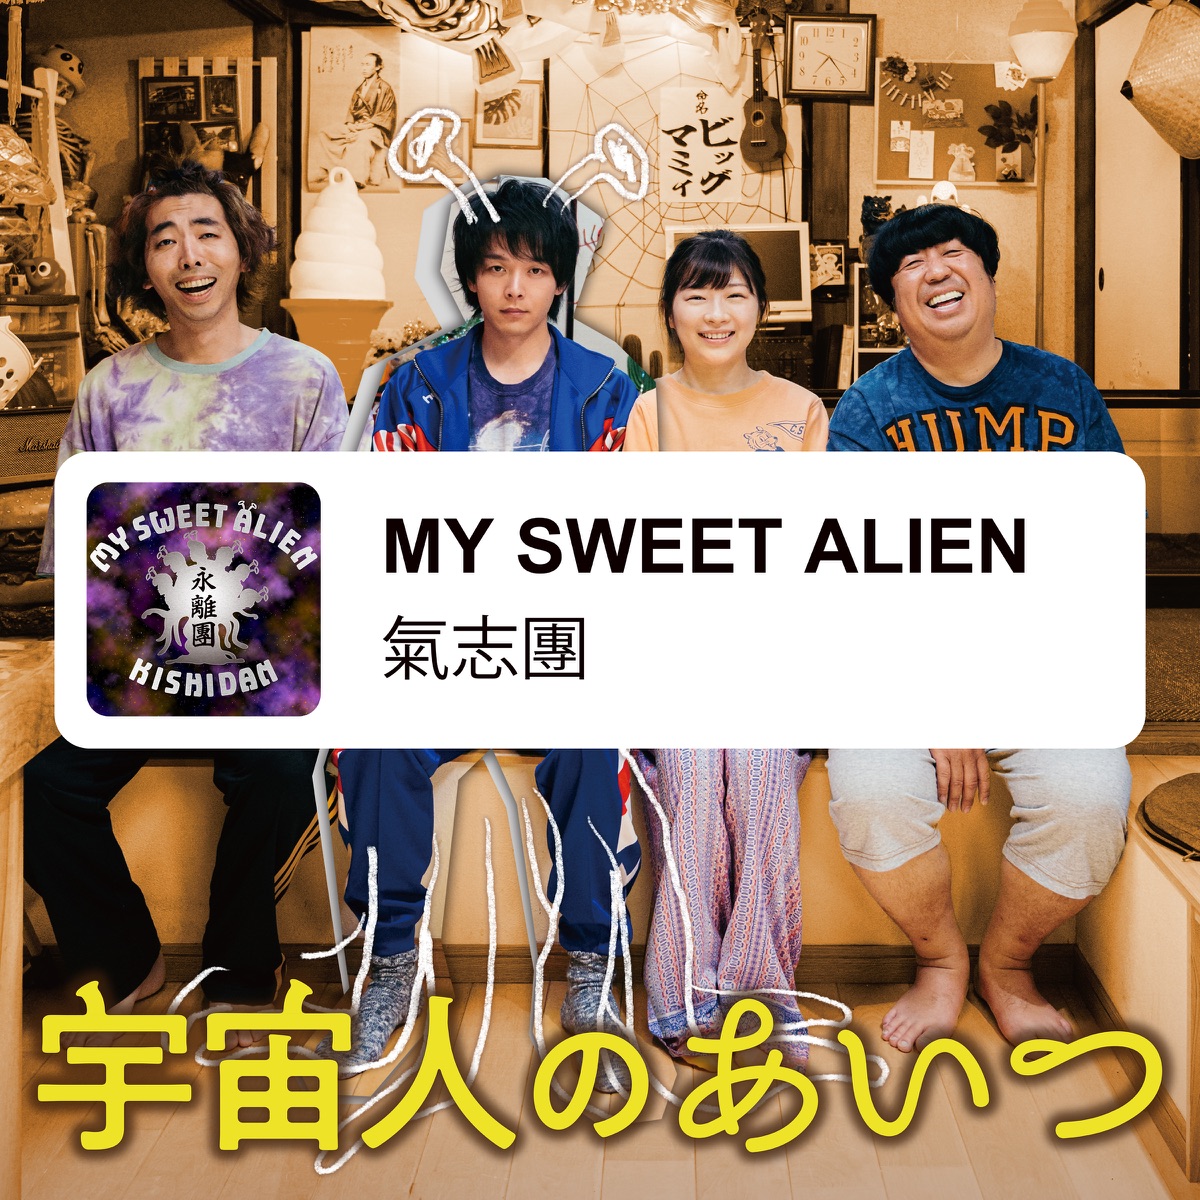 Cover art for『Kishidan - MY SWEET ALIEN』from the release『MY SWEET ALIEN』